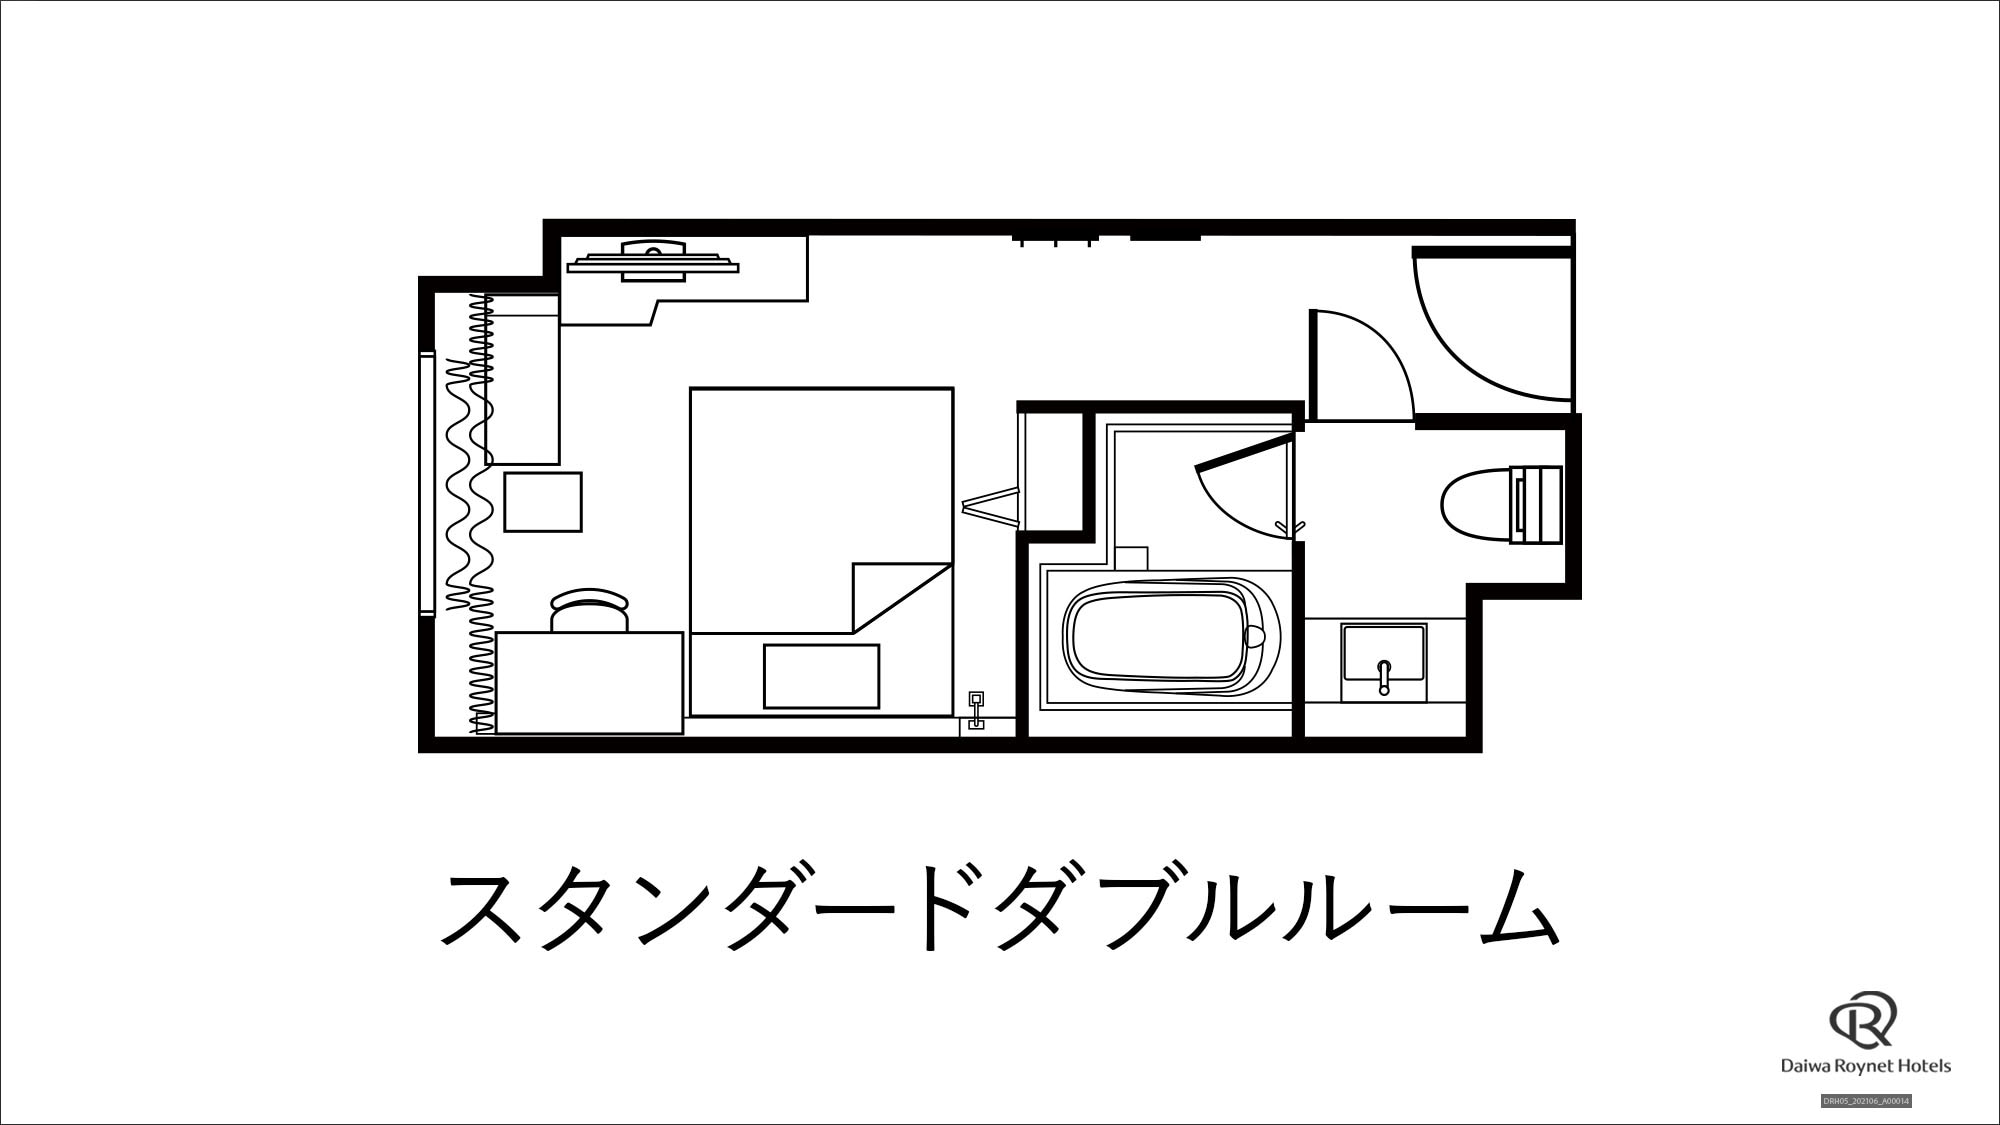 Standard double floor plan